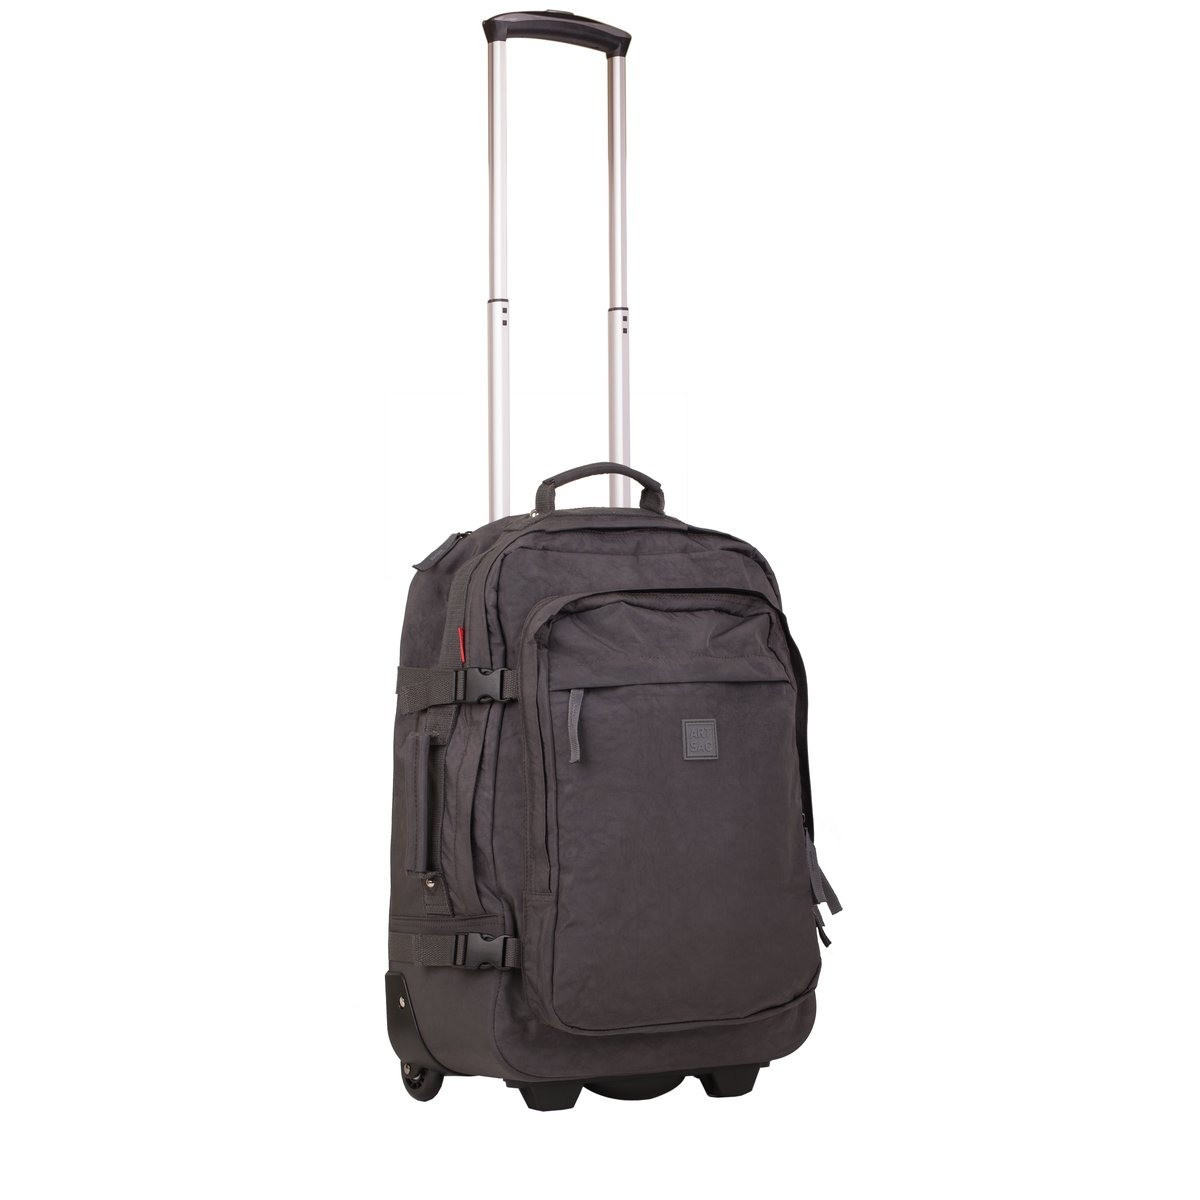 Medium Luggage / Trolley Case - Frnt Pkt